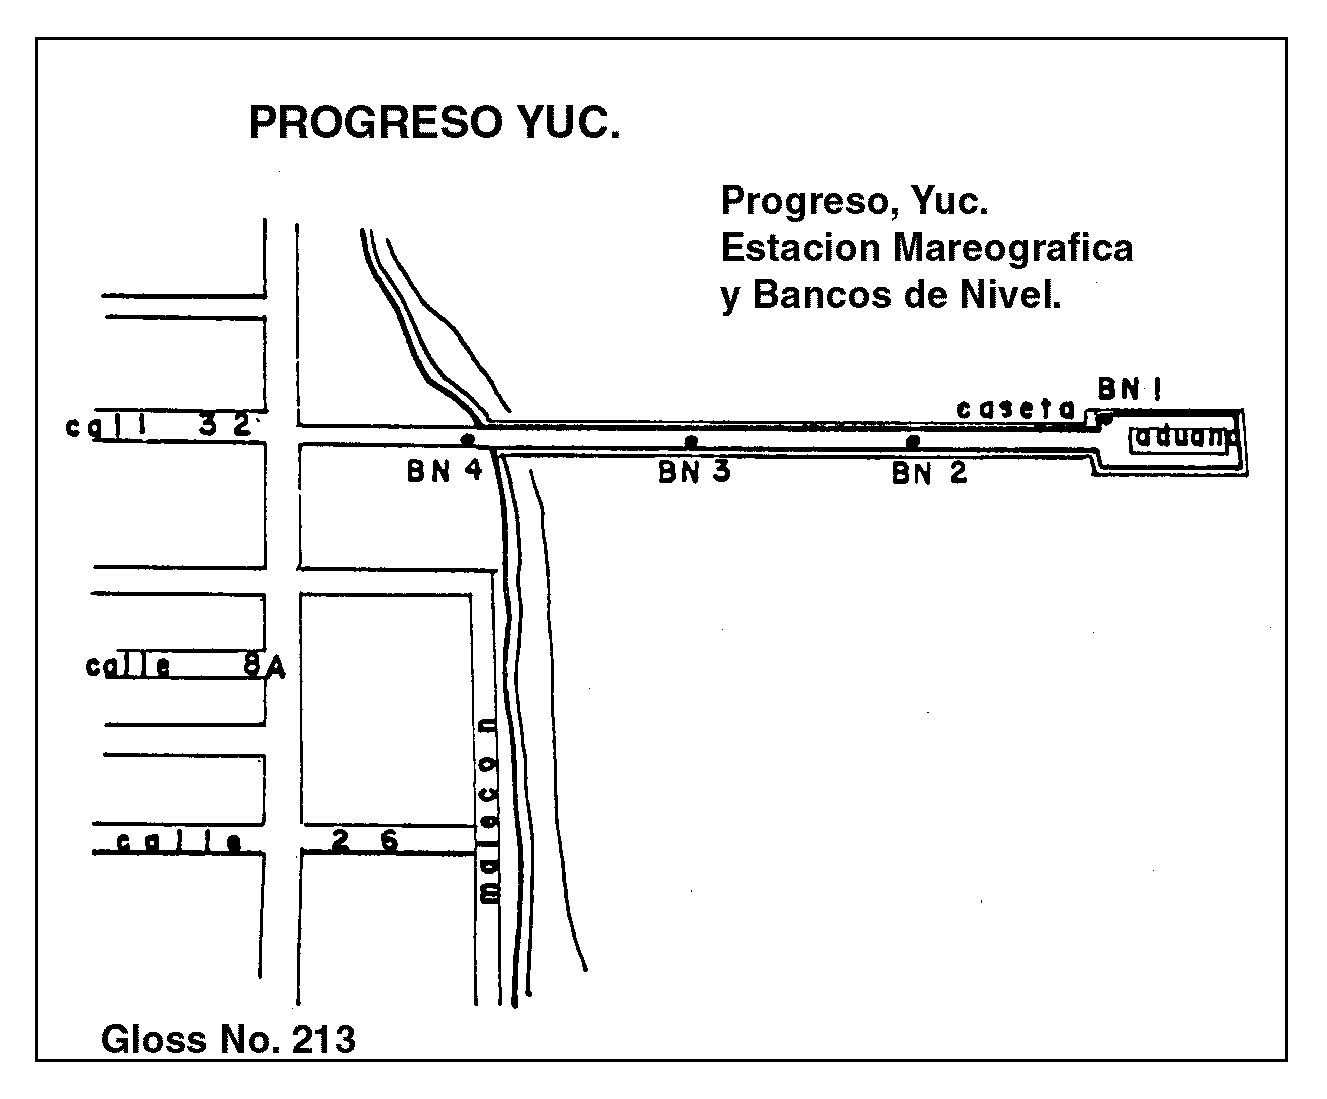 Location map for Progreso, Yuc., Mexico